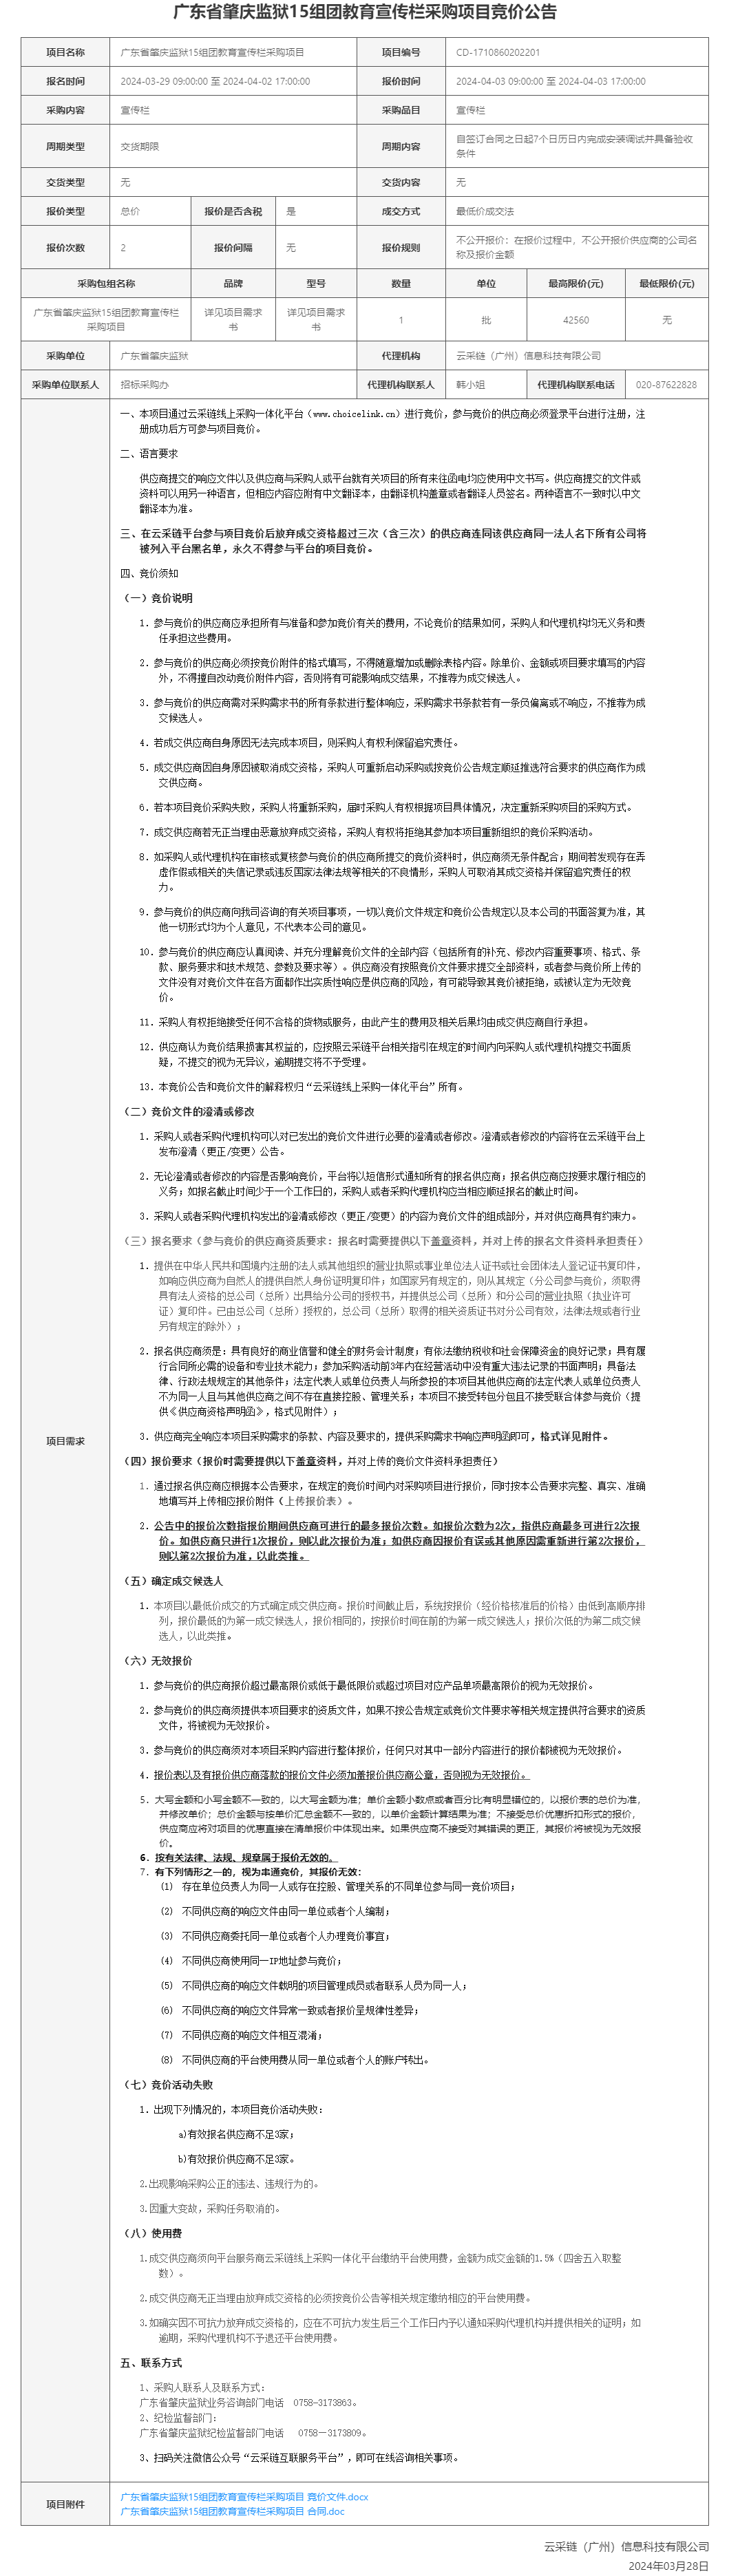 广东省肇庆监狱15组团教育宣传栏采购项目竞价公告.png